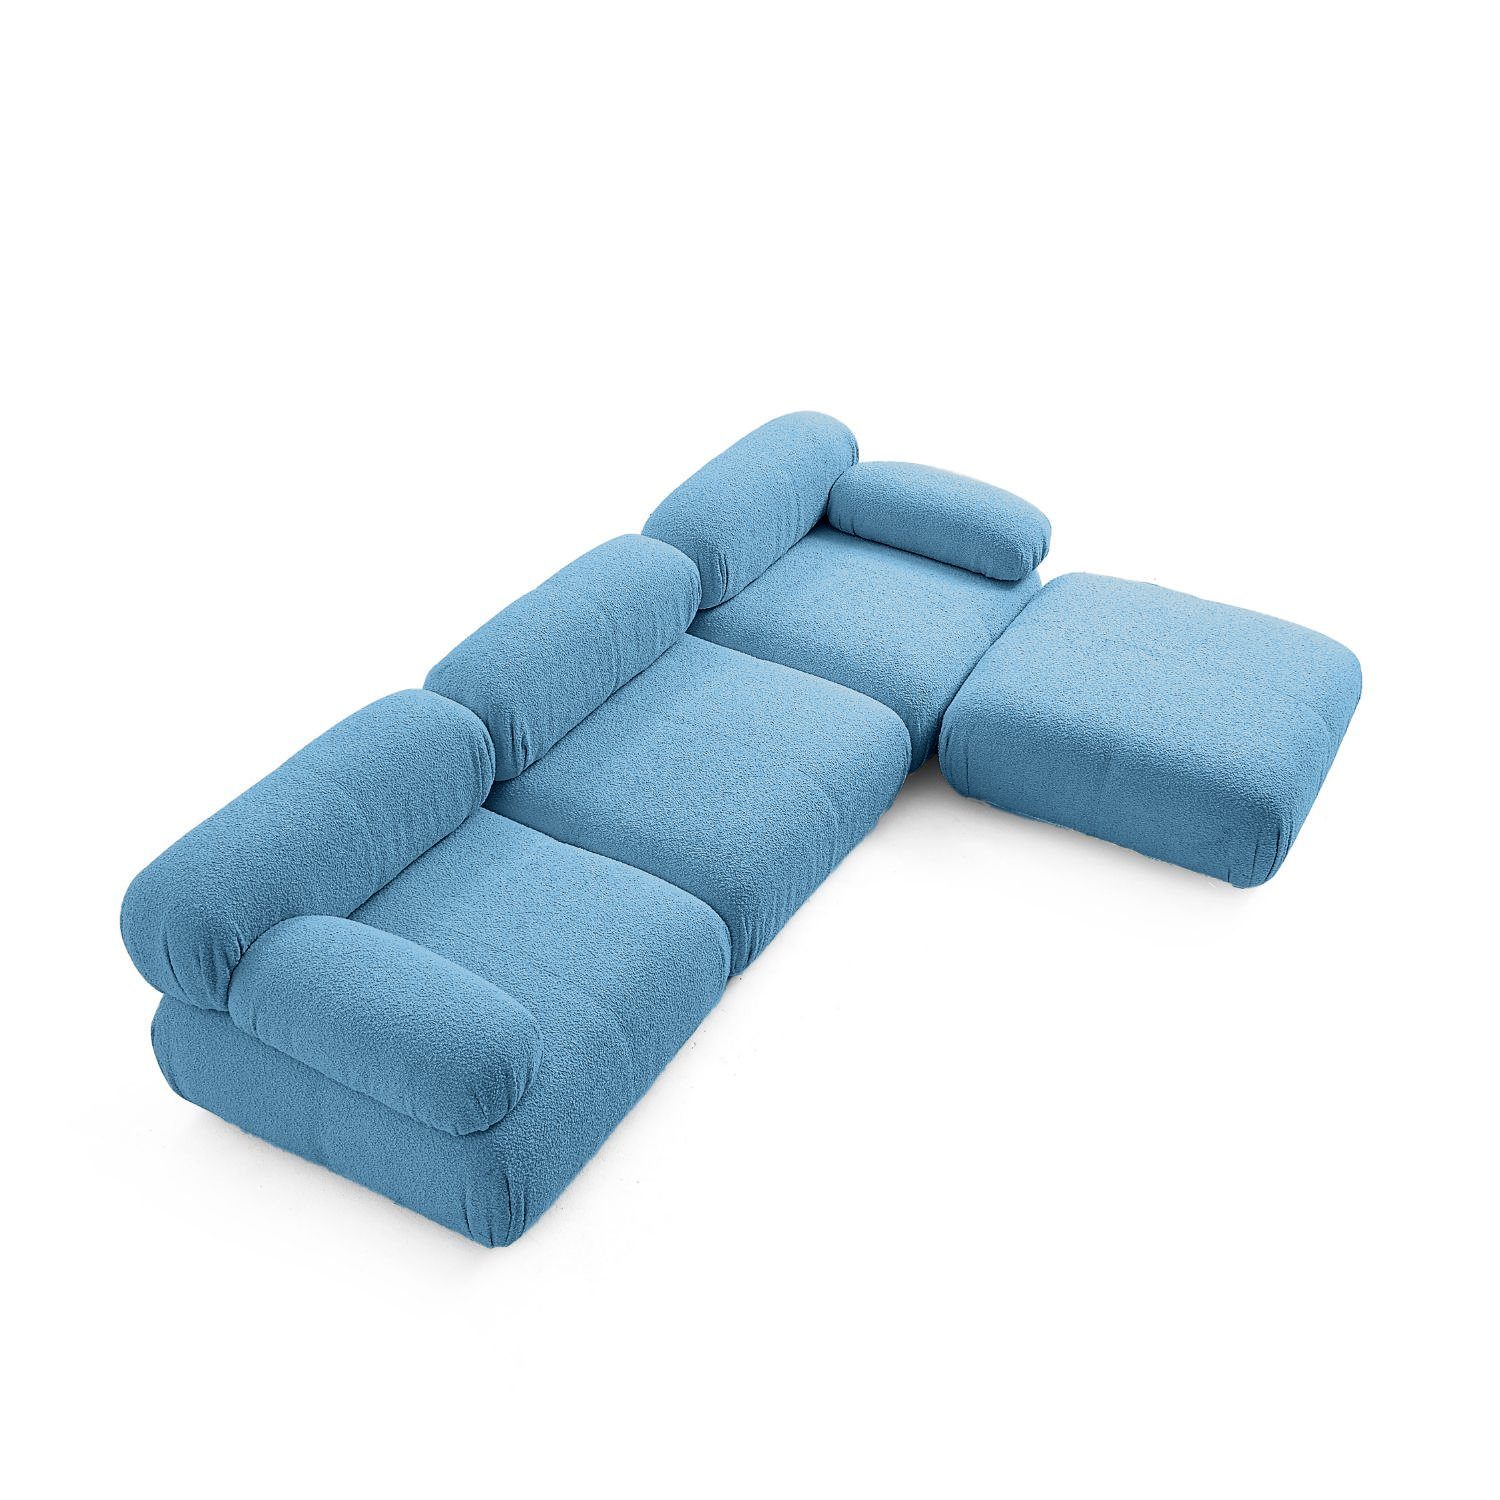 enthalten! Aufbau aus Generation und Sitzmöbel Sofa Touch neueste Preis Komfortschaum im Blau-Lieferung Knuffiges me